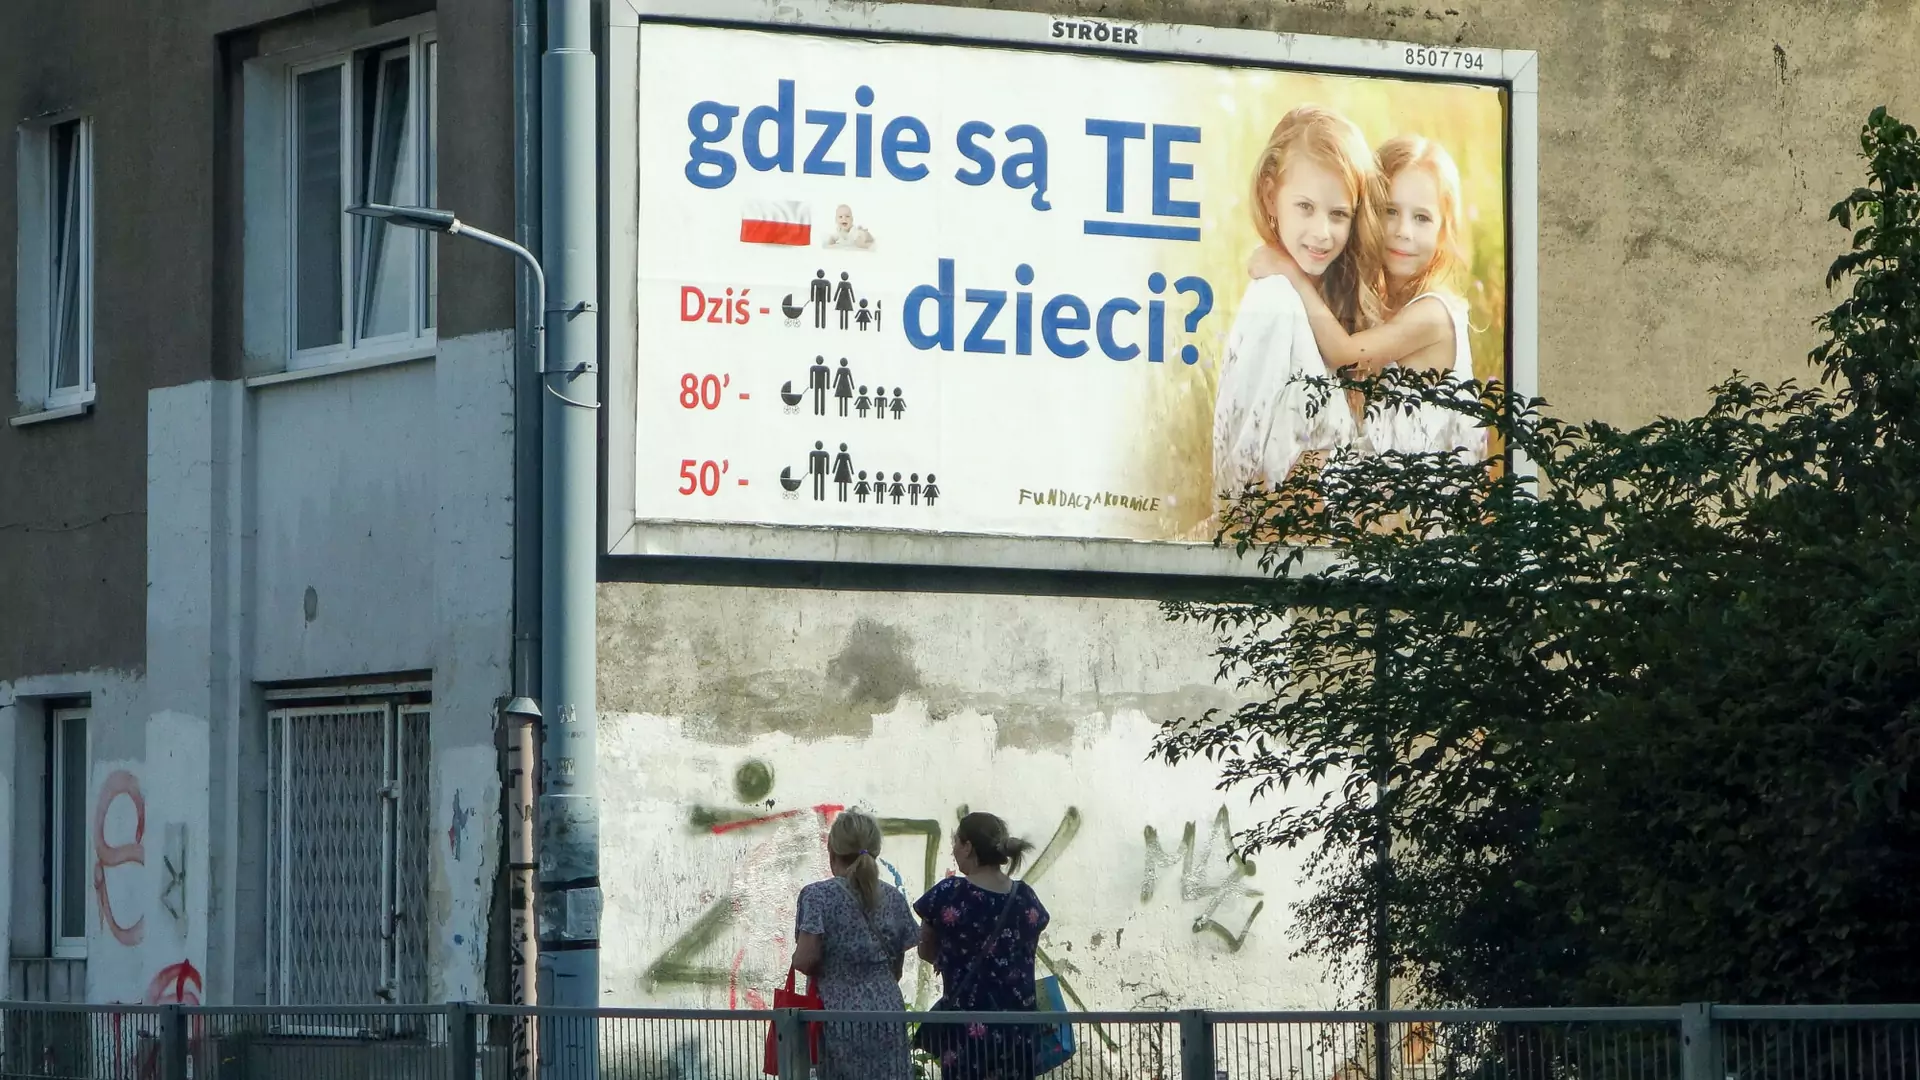 Ile dokładnie zapłacono za billboardy "Gdzie są TE dzieci"? Fundacja wydała miliony